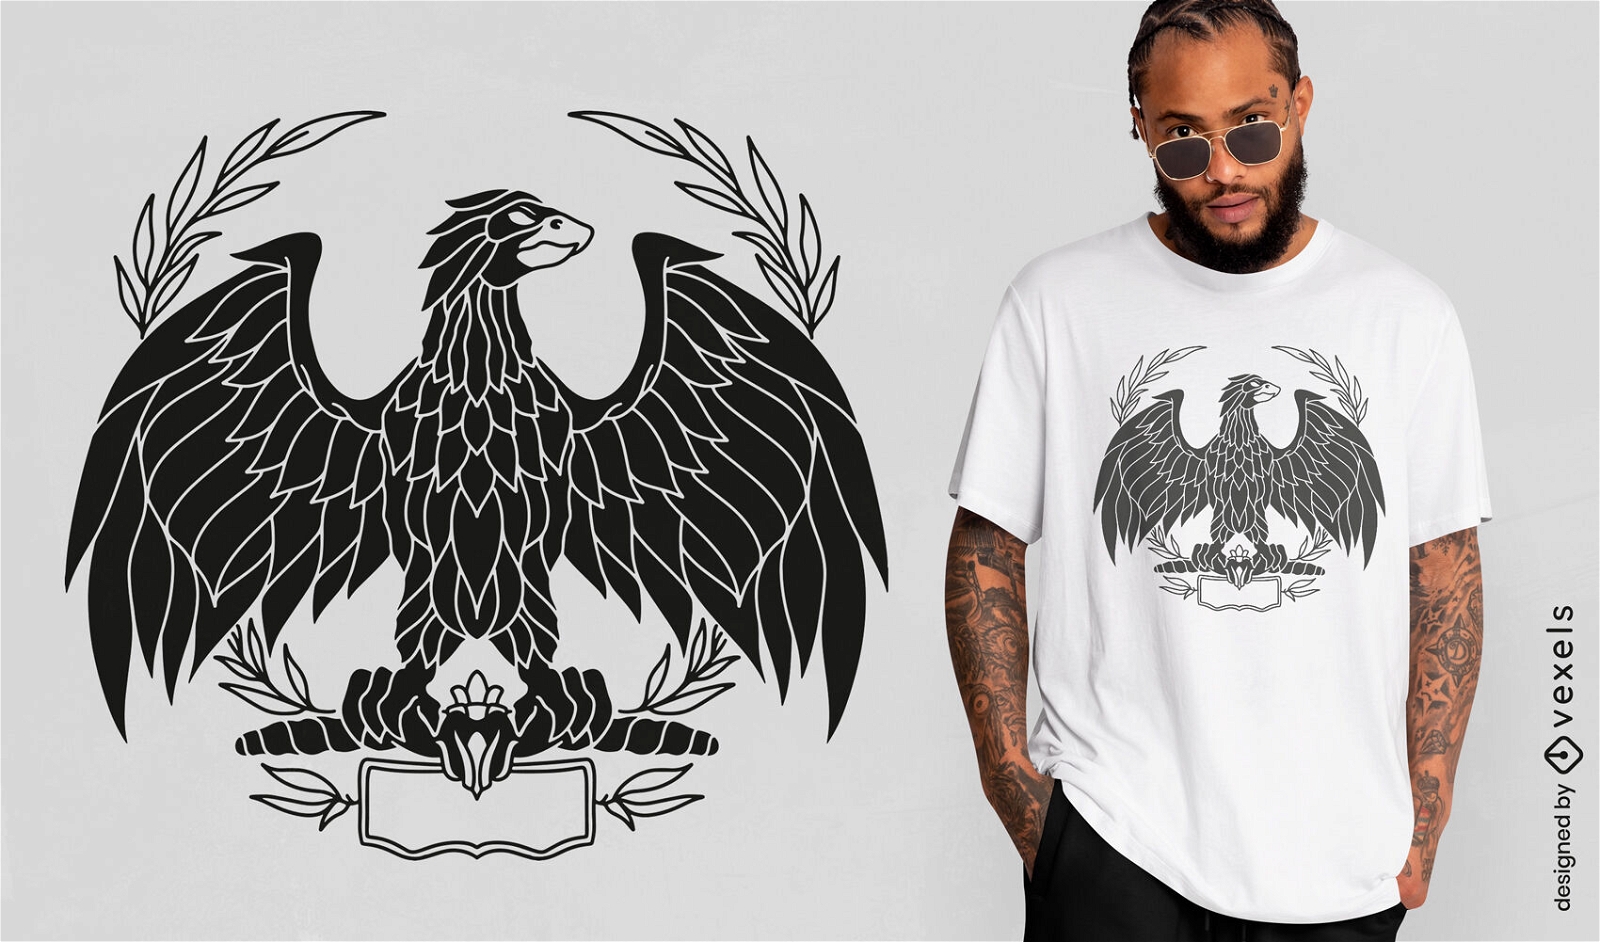 Adler ausgeschnittenes T-Shirt-Design